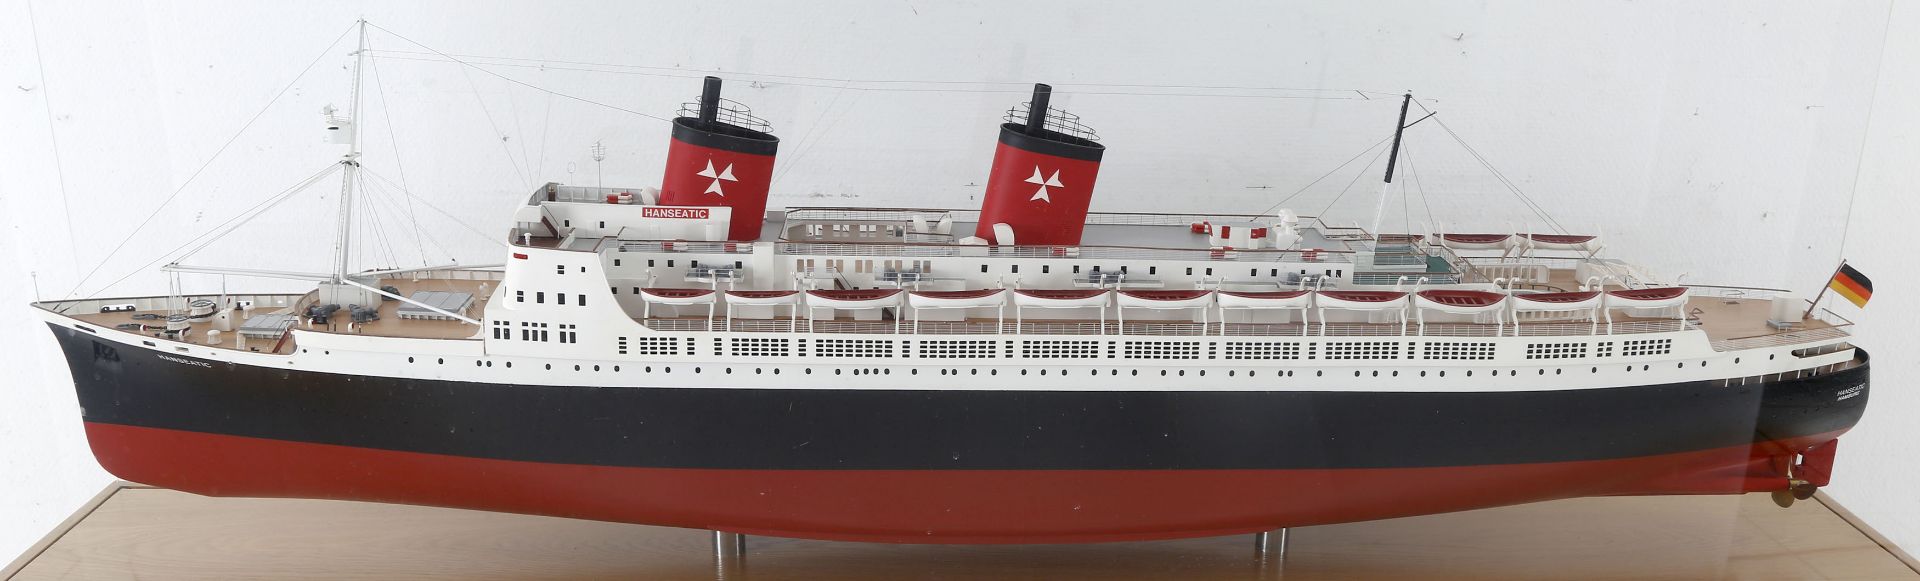 Schiffsmodell 'Hanseatic' (1929), Maßstab 1:150